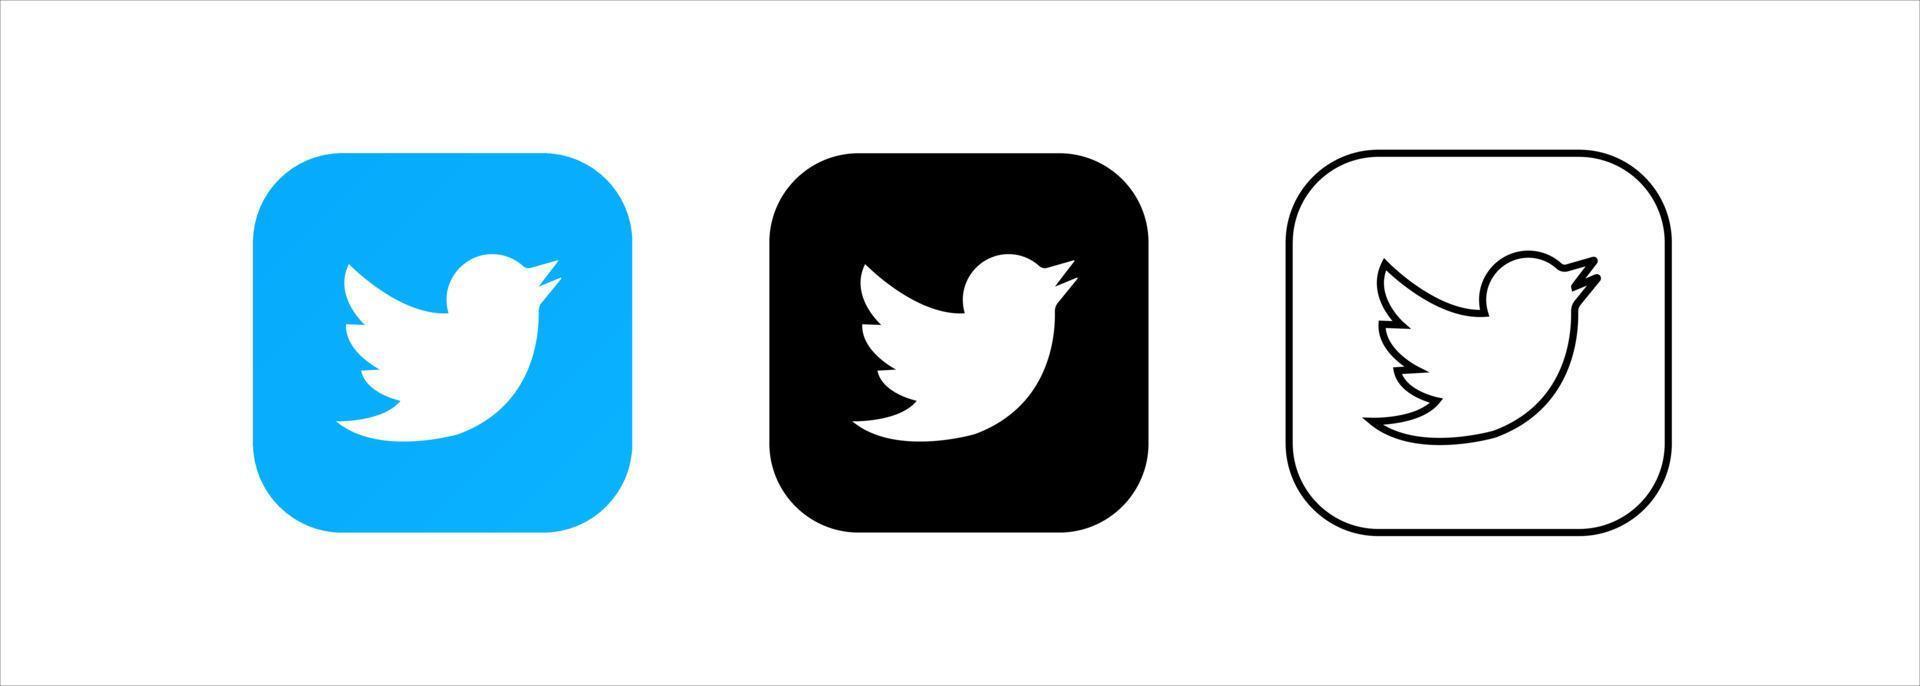 conjunto de social redes iconos gorjeo diseño plano íconos aislado en blanco antecedentes vector